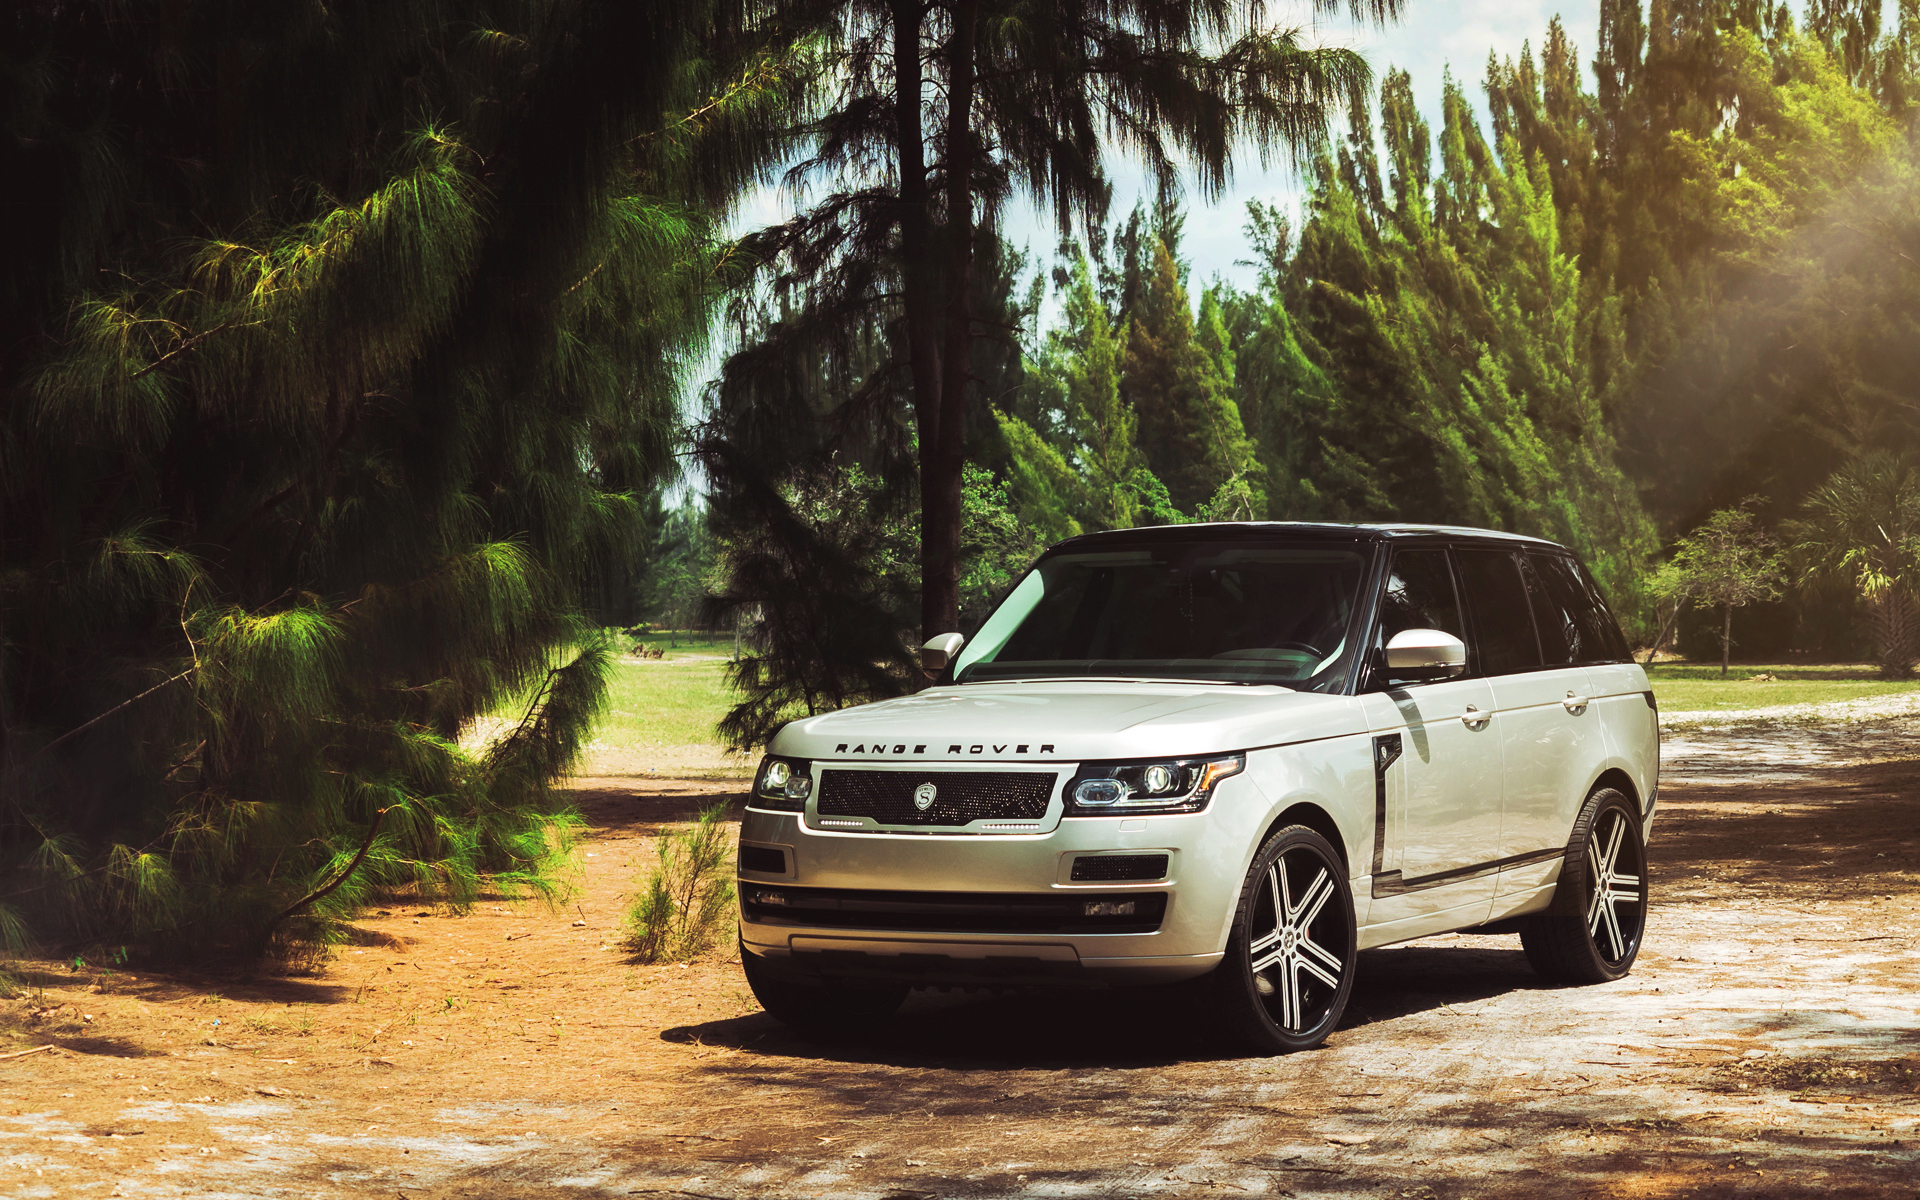 Handy-Wallpaper Range Rover, Fahrzeuge kostenlos herunterladen.